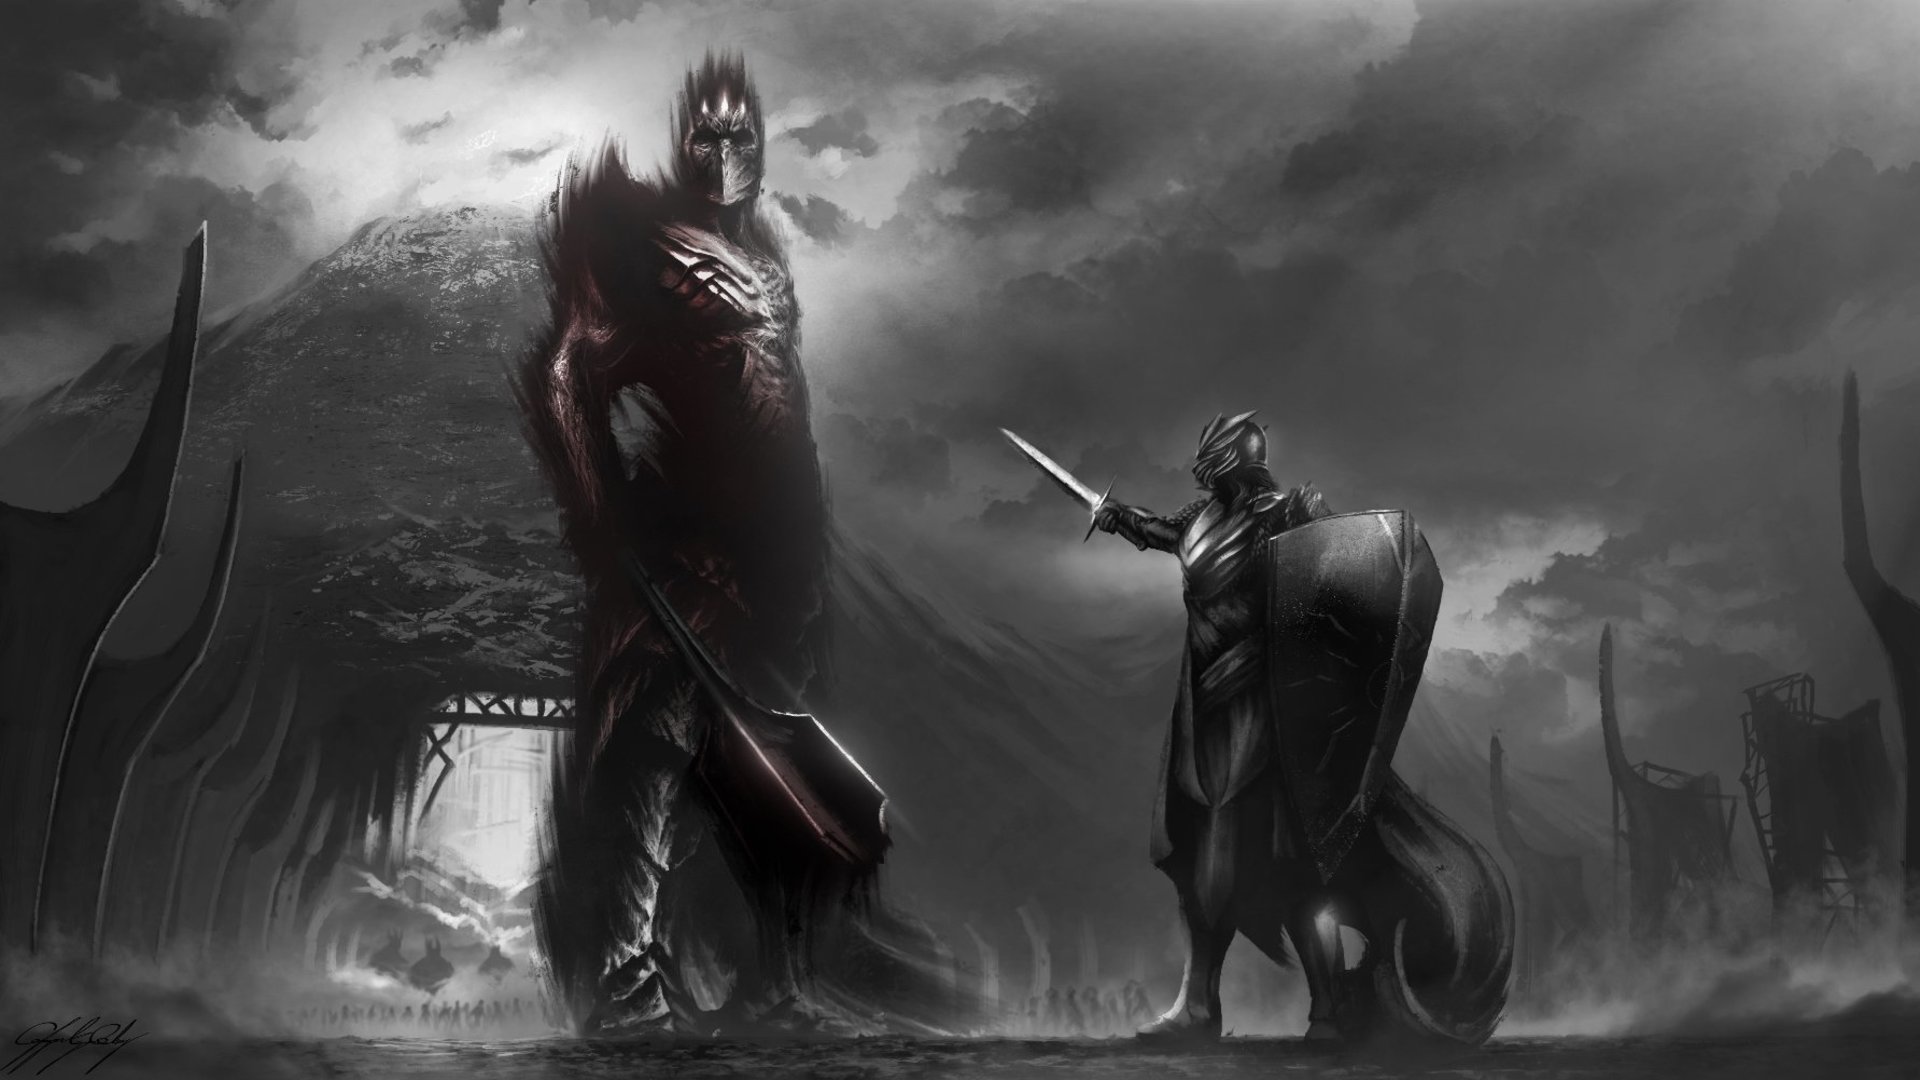 Descarga gratuita de fondo de pantalla para móvil de Fantasía, El Señor De Los Anillos, Morgoth (El Señor De Los Anillos), Fingolfin (El Señor De Los Anillos).